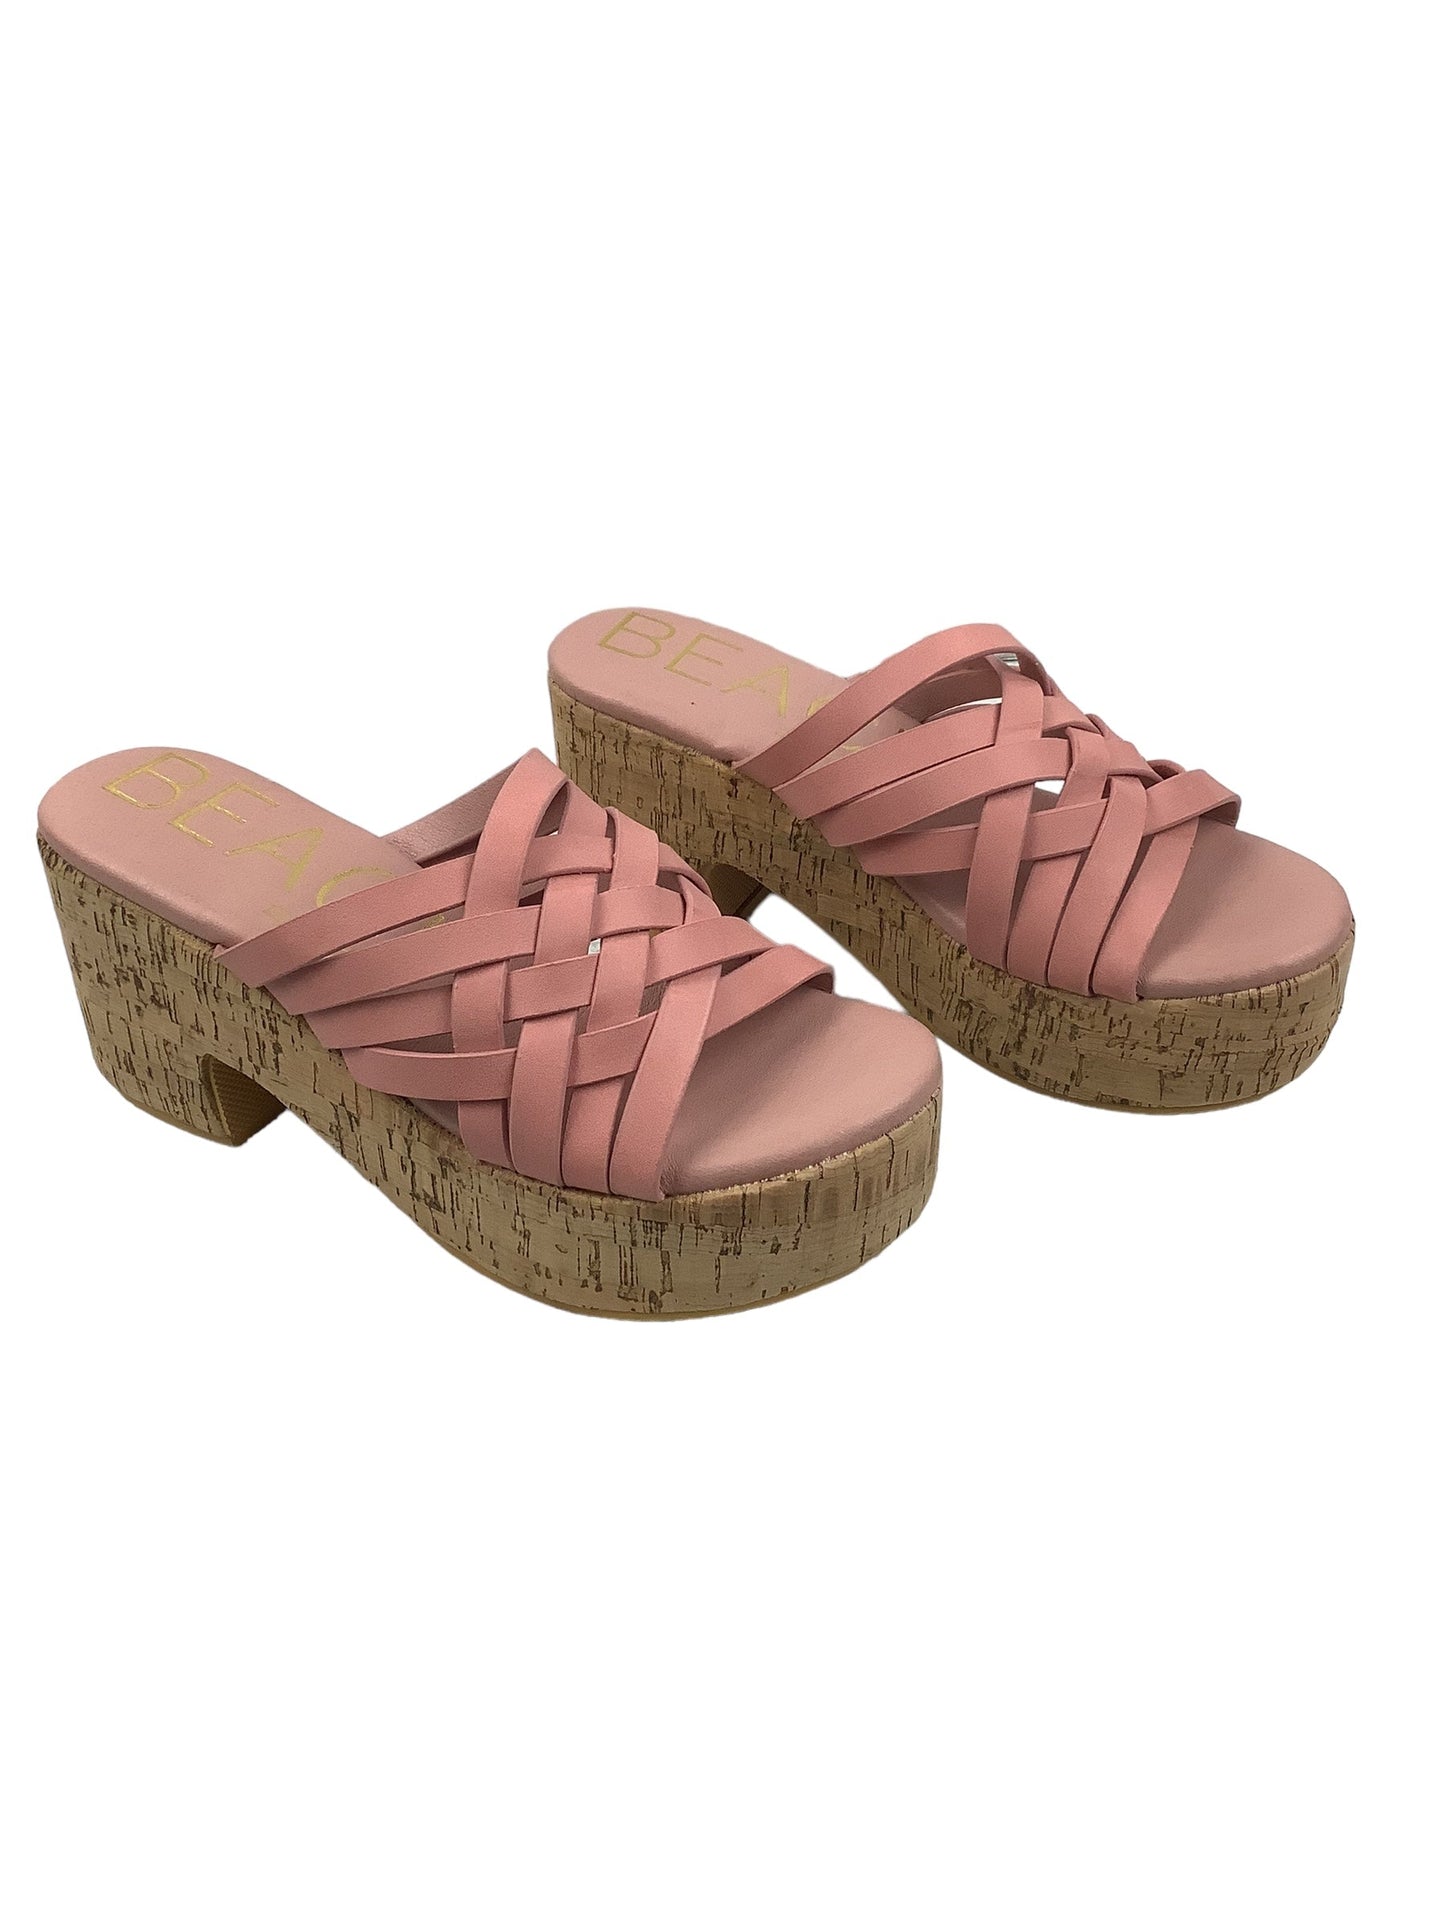 Pink Shoes Heels Block Matisse, Size 7